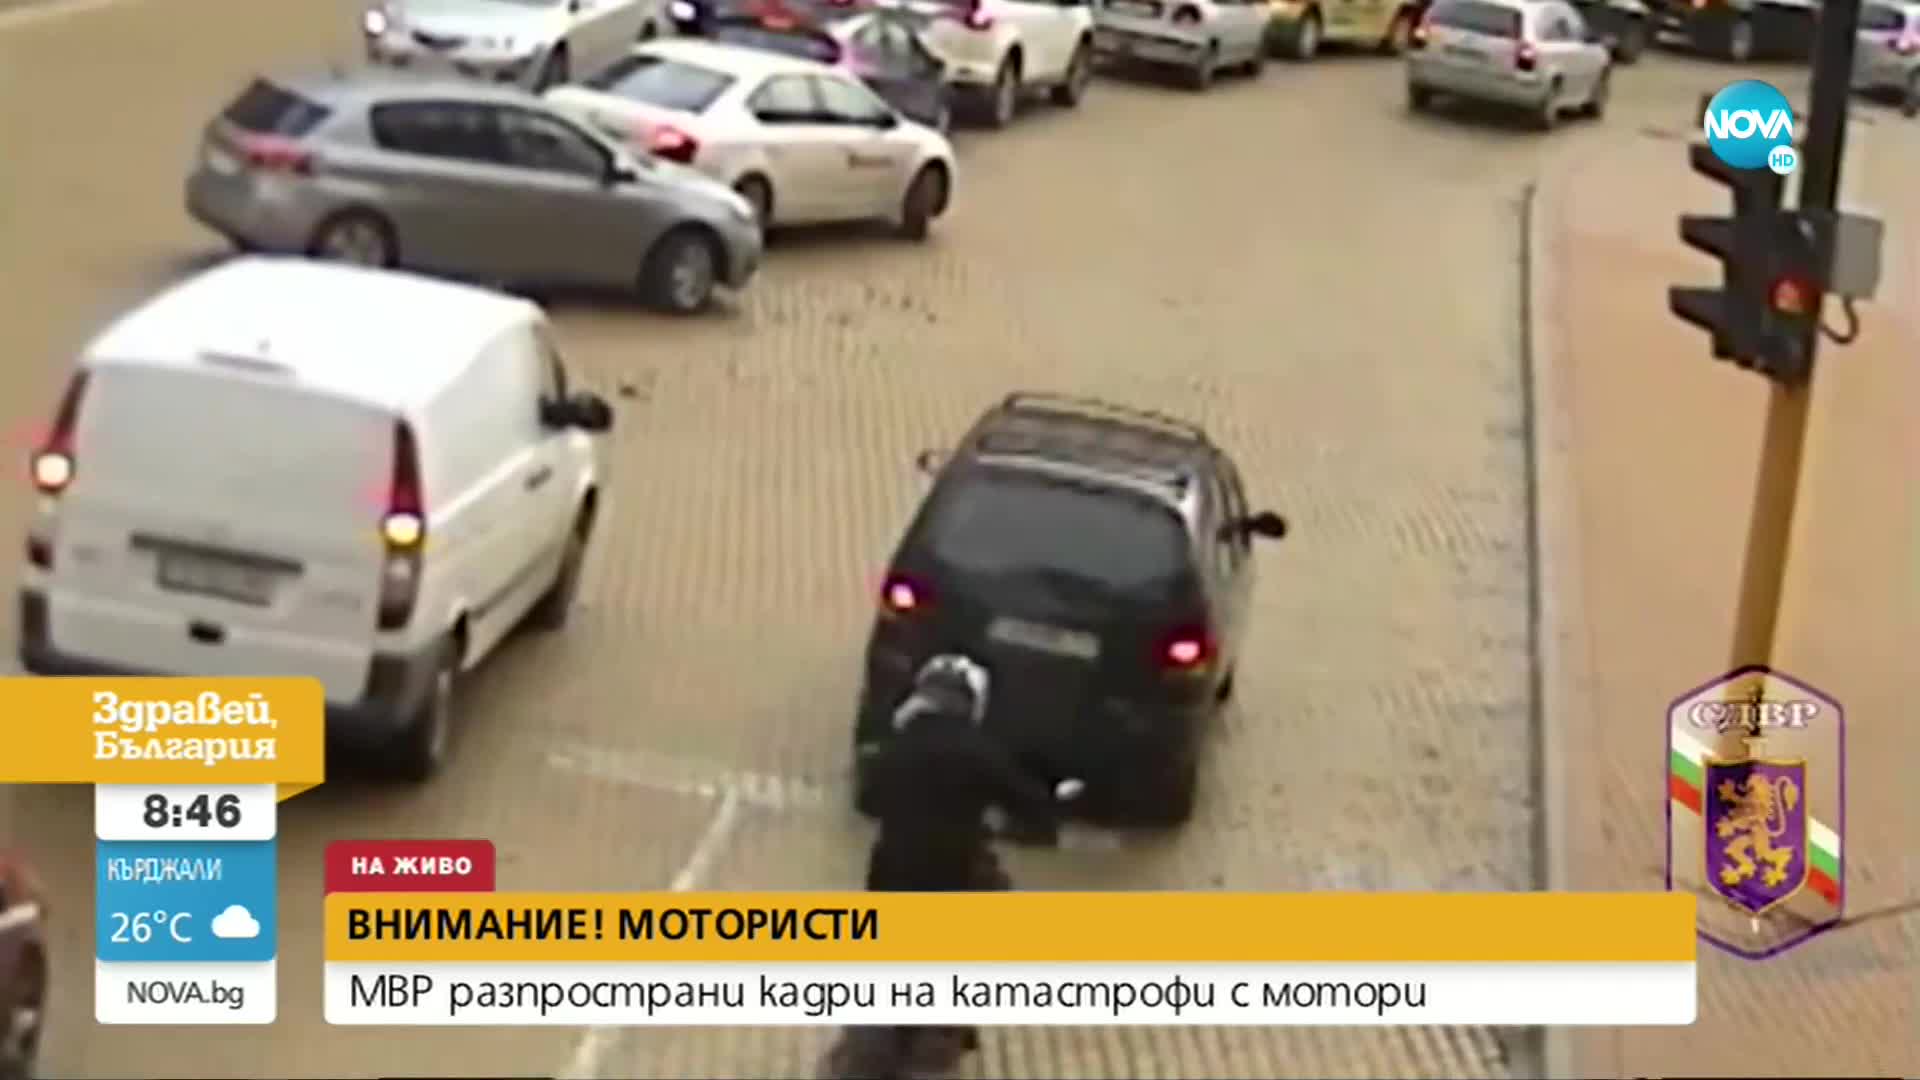 МВР разпространи кадри на катастрофи с мотори в София